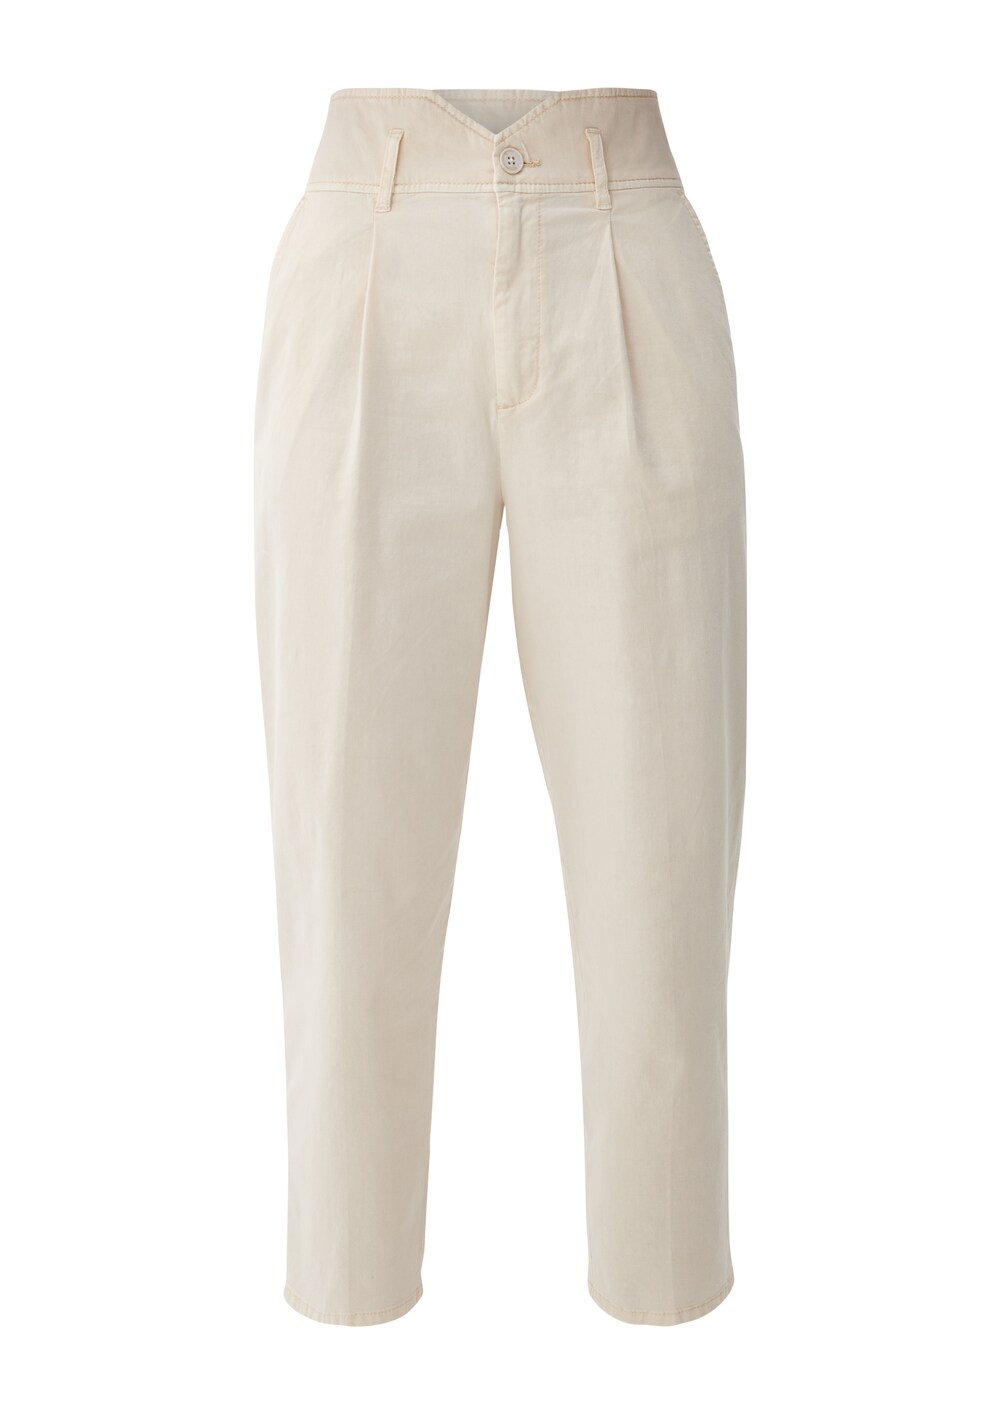 Обычные брюки со складками спереди S.Oliver, крем